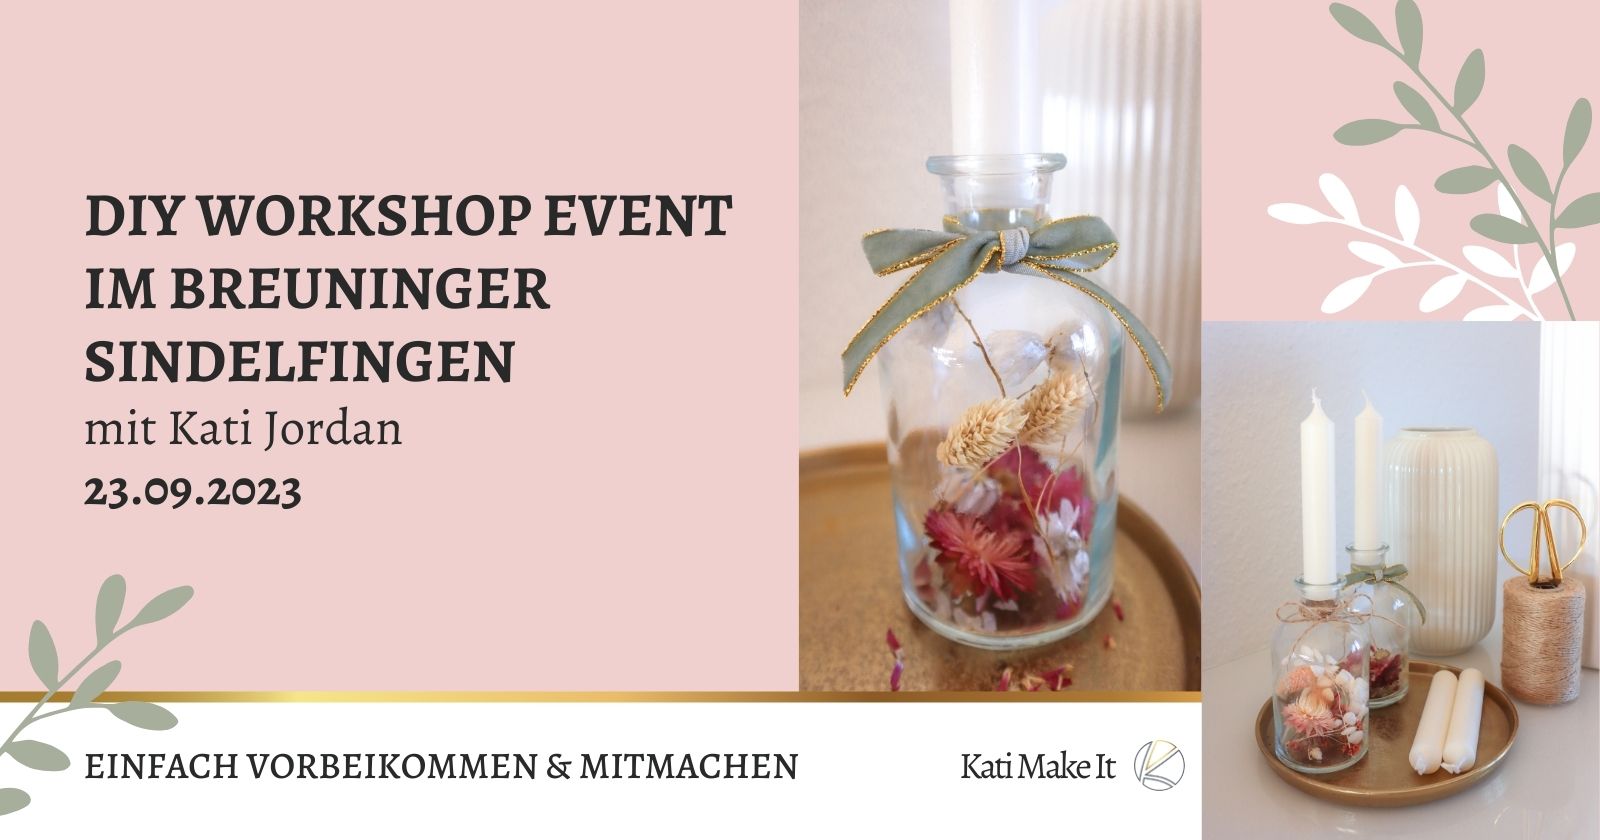 Kreativ-Workshop in Breuninger Sindelfingen: Offener Herbst-DIY-Workshop mit Trockenblumen am 23.09.2023 - Komm vorbei und lass uns gemeinsam kreativ werden.